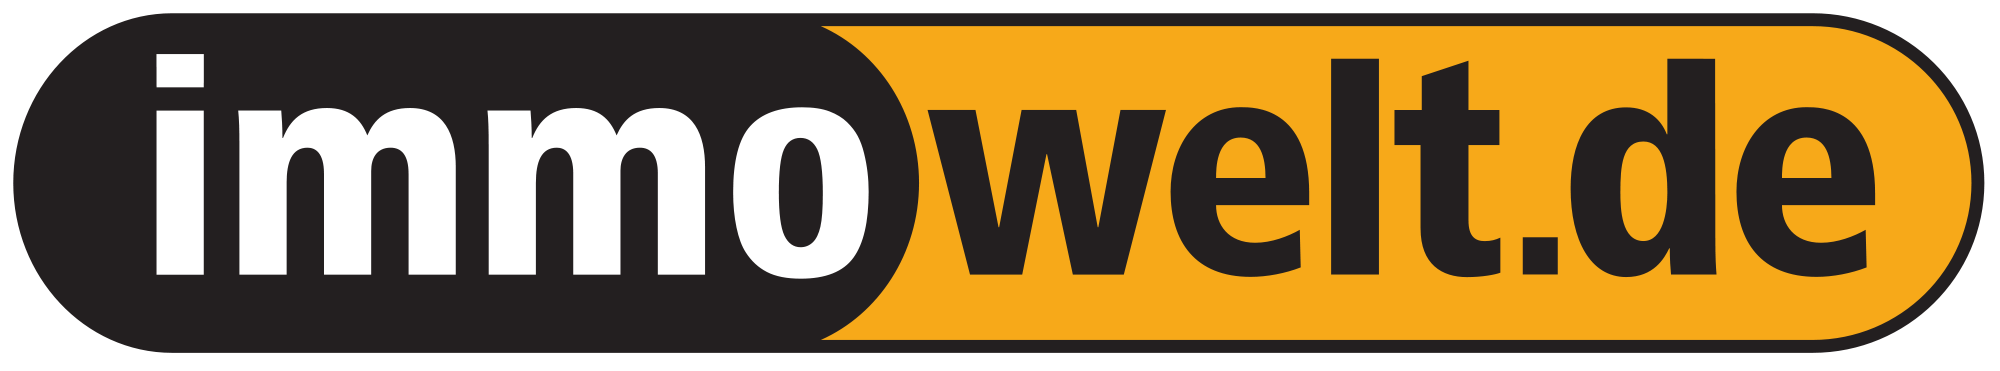 Logo immowelt.de